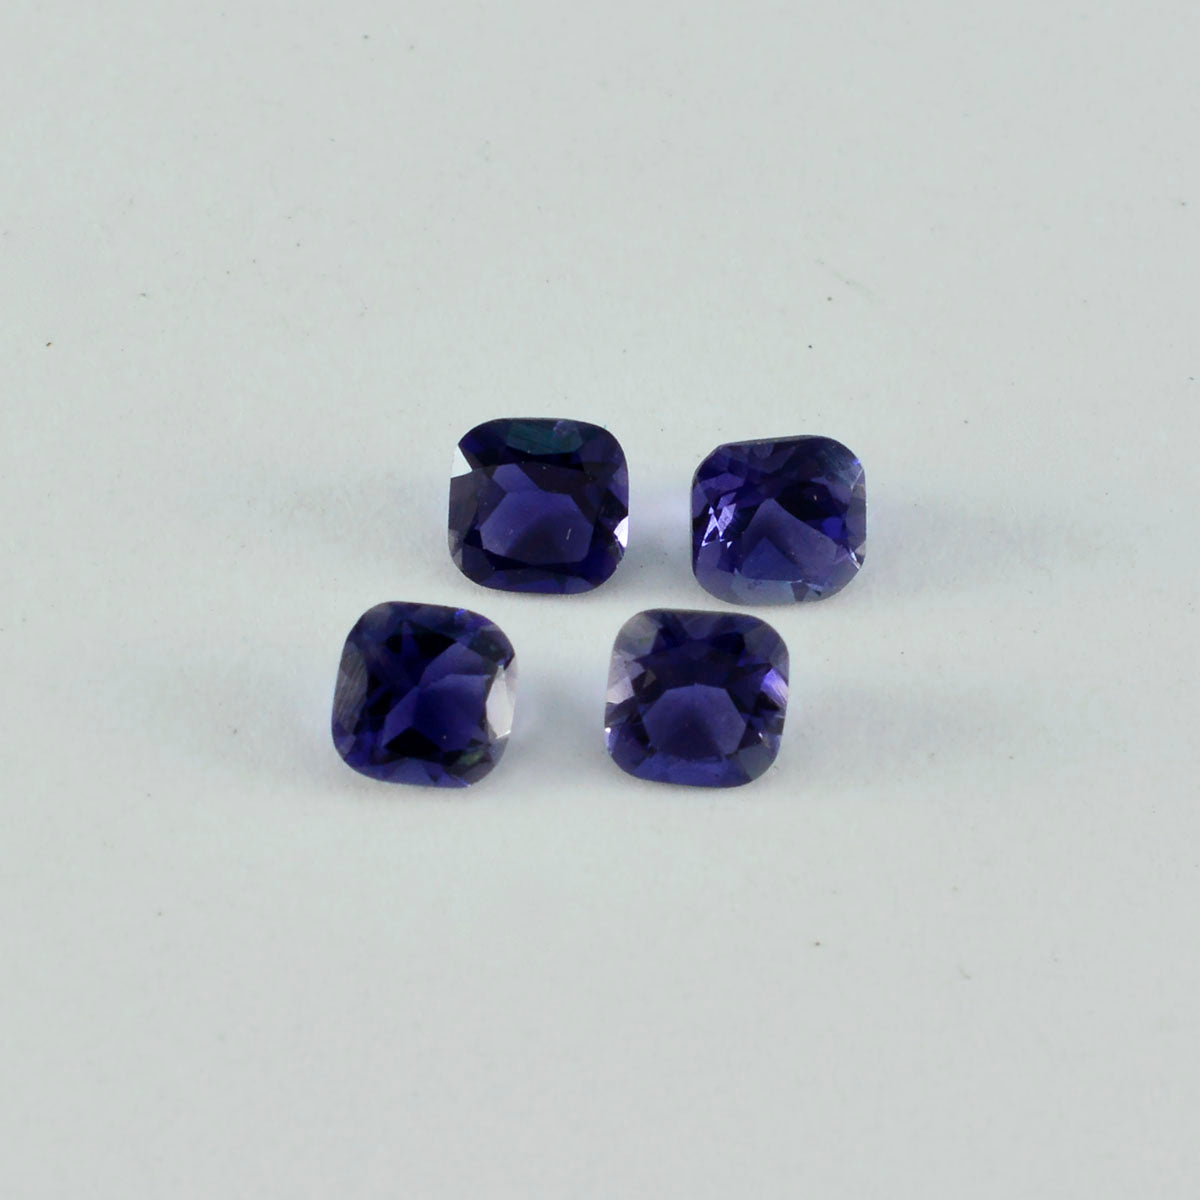 riyogems 1 шт. синий иолит граненый 6x6 мм в форме подушки отличное качество свободный драгоценный камень